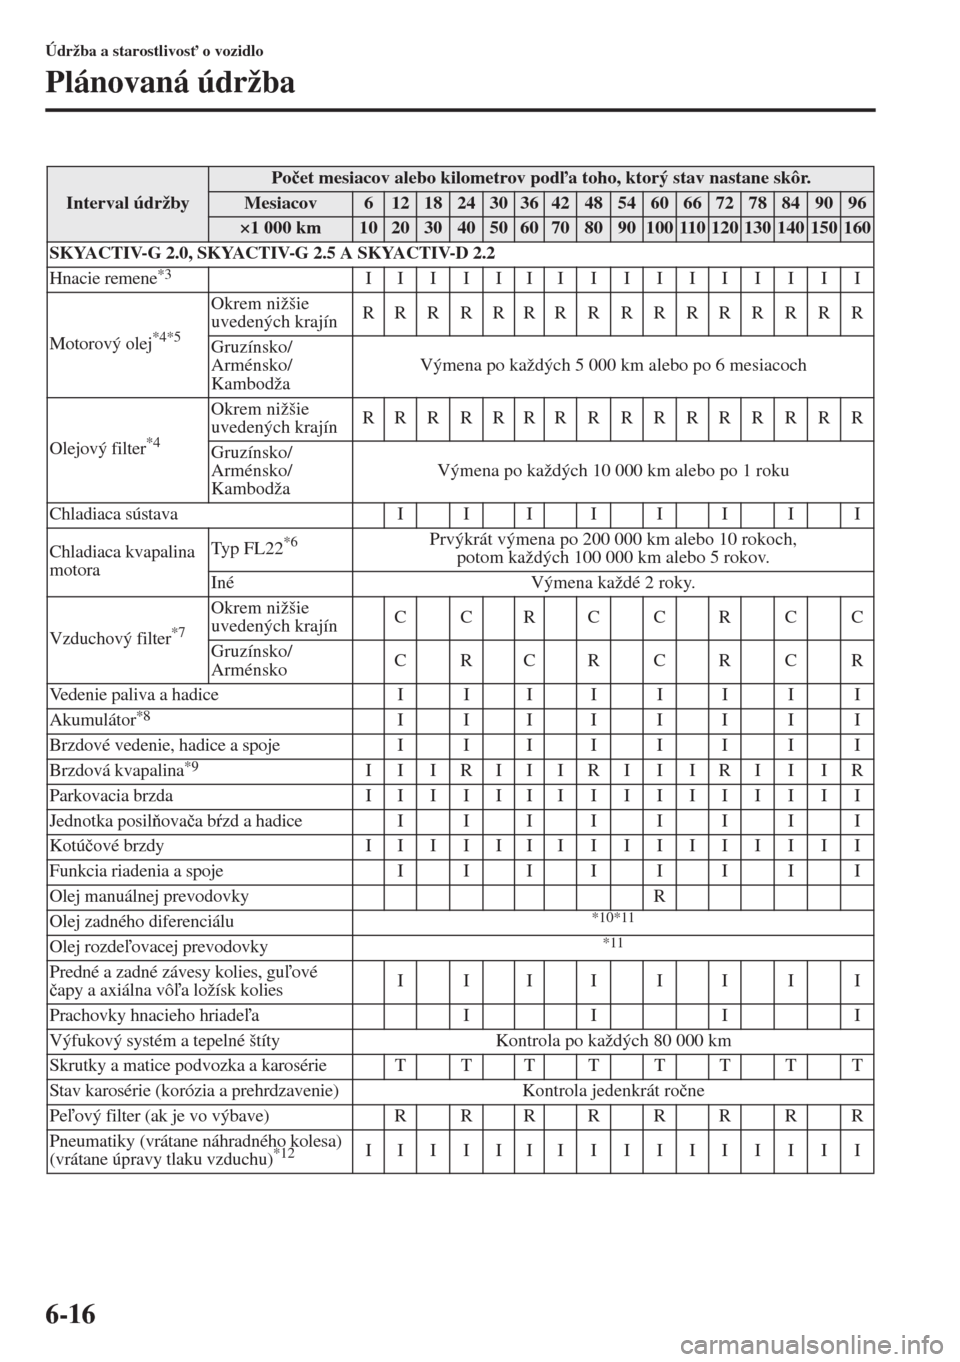 MAZDA MODEL CX-5 2015  Užívateľská príručka (in Slovak) 6-16
Údržba a starostlivos" o vozidlo
Plánovaná údržba
Interval údržby
Po�þet mesiacov alebo kilometrov poda toho, ktorý stav nastane skôr.
Mesiacov6121824303642485460667278849096
×1 00